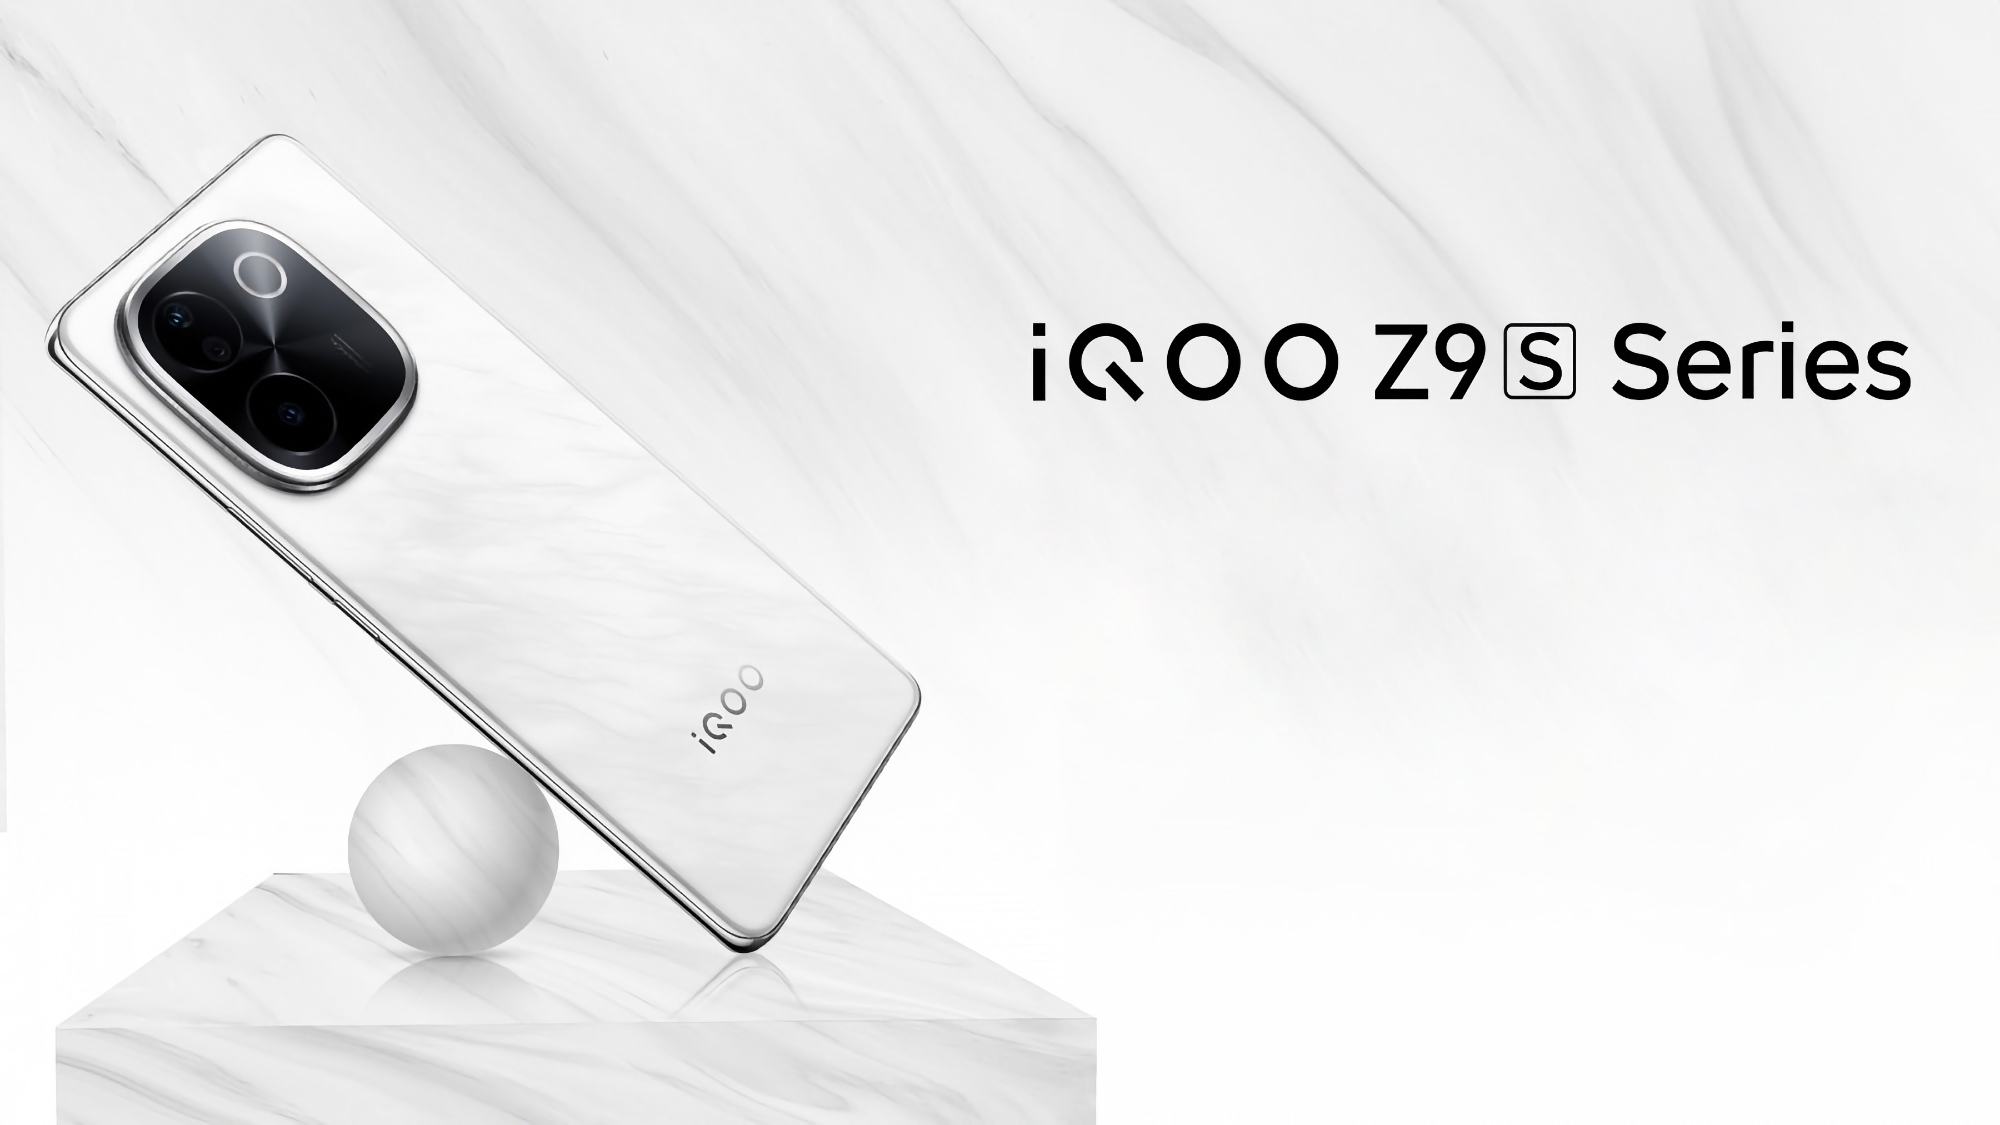 vivo stellt am 4. August die iQOO Z9s Smartphone-Reihe vor